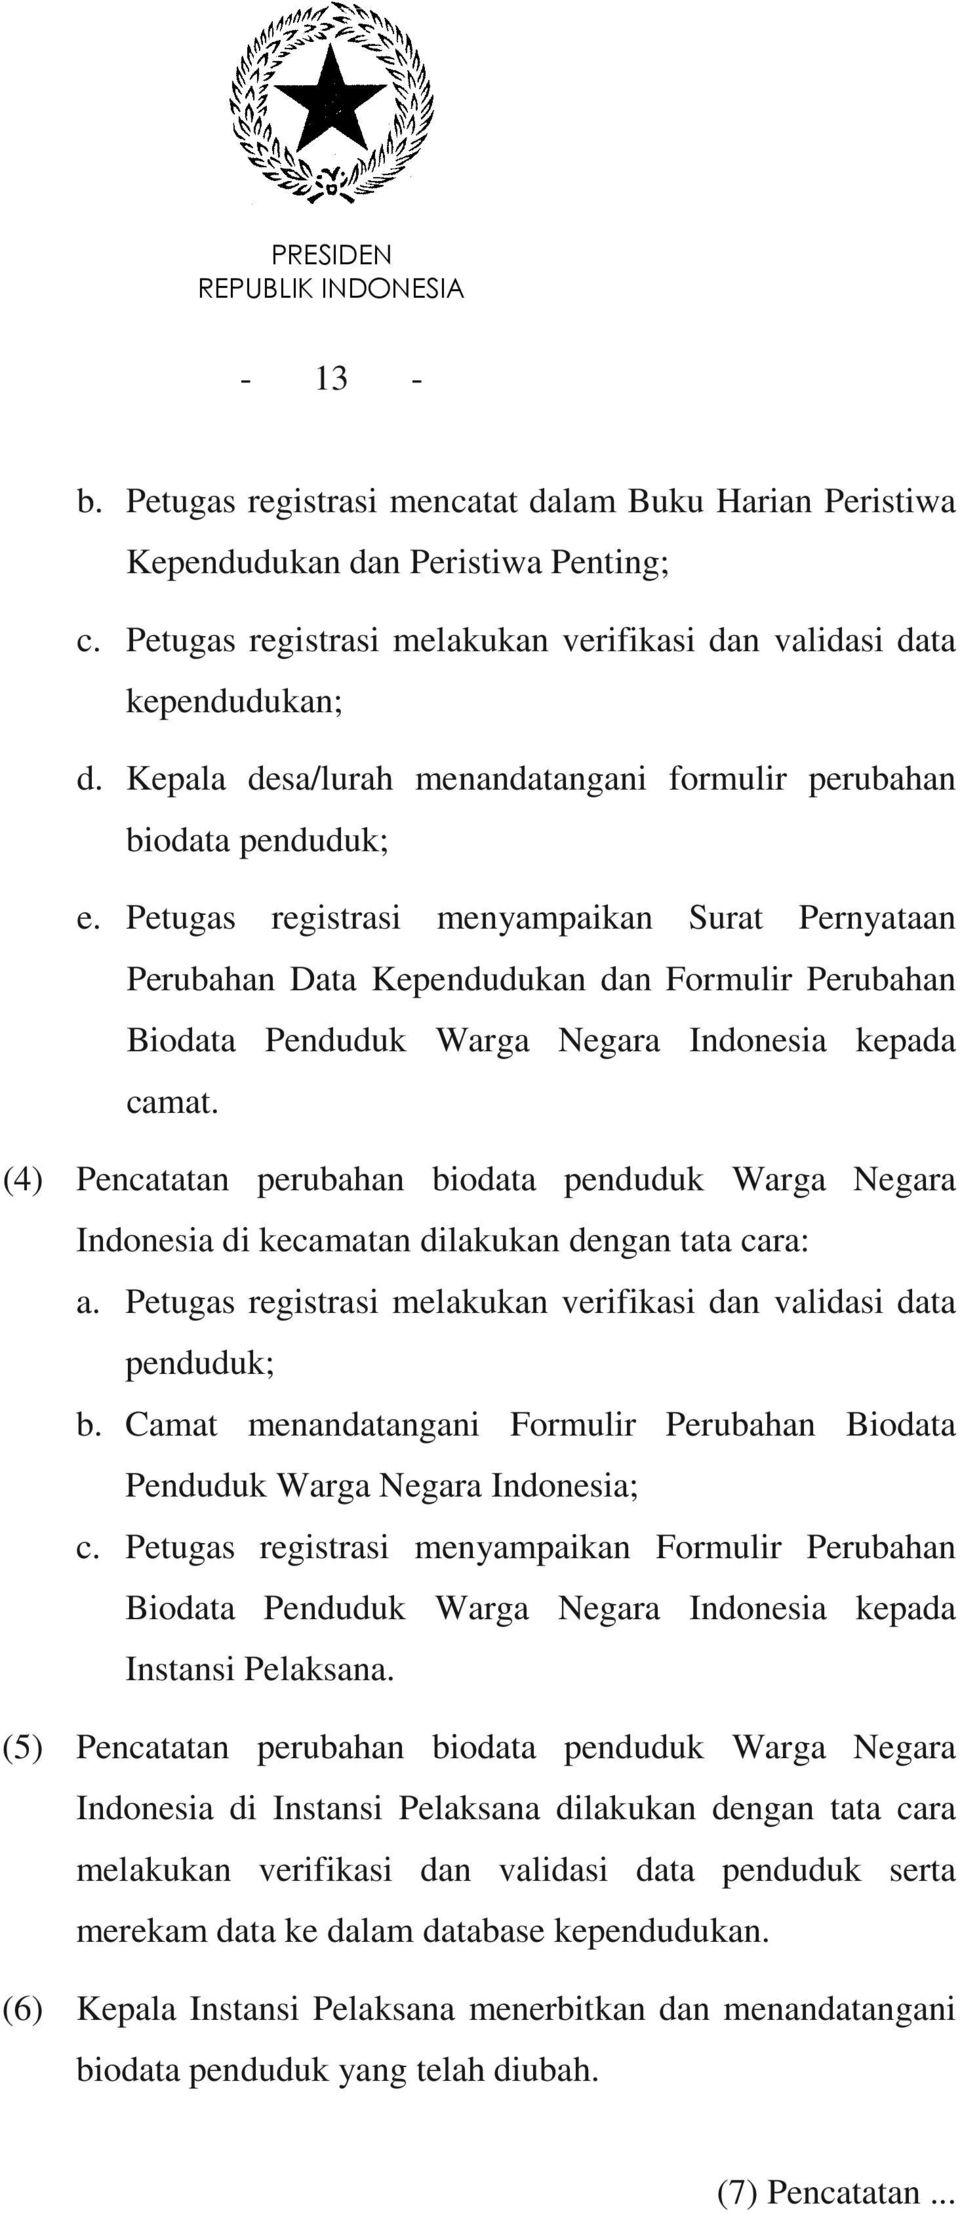 Petugas registrasi menyampaikan Surat Pernyataan Perubahan Data Kependudukan dan Formulir Perubahan Biodata Penduduk Warga Negara Indonesia kepada camat.